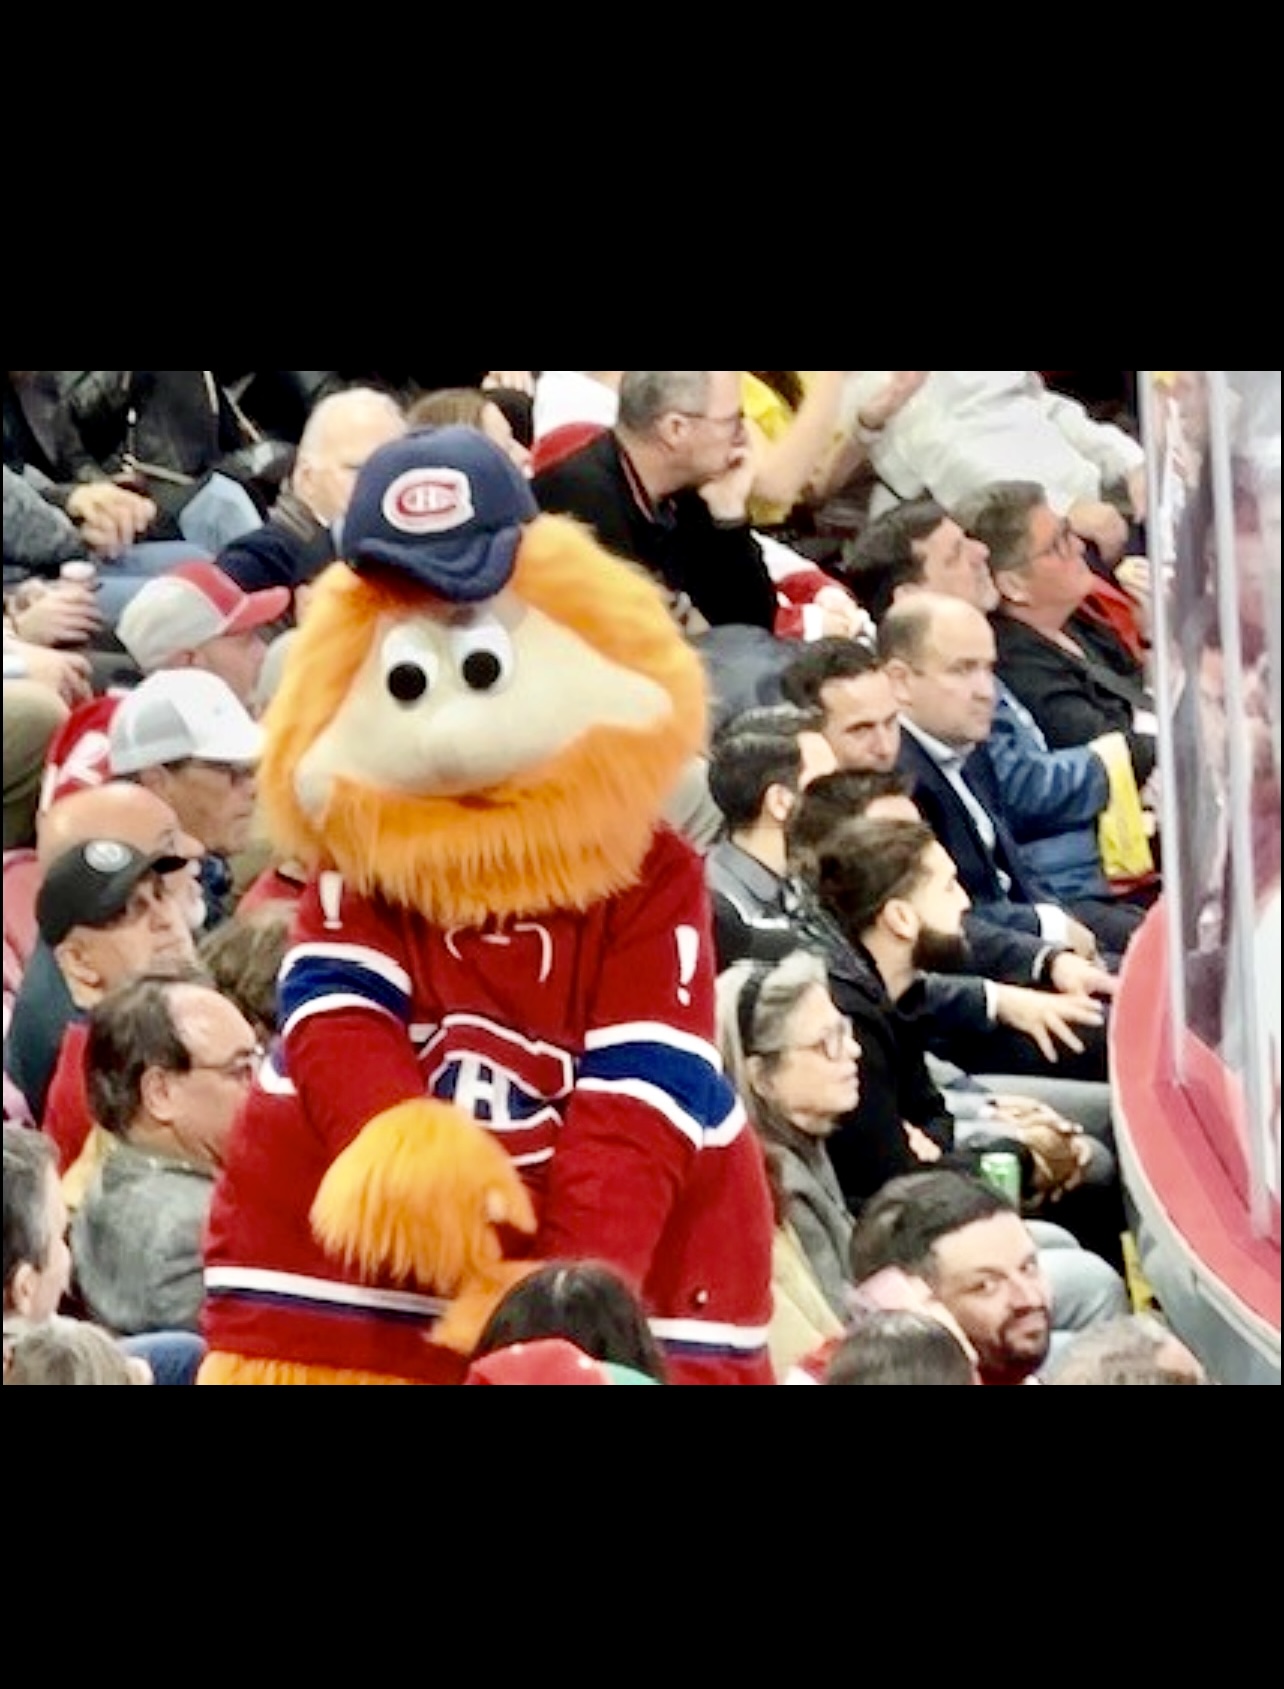 Une soirée au hockey avec la mascotte des Canadiens de Montréal.